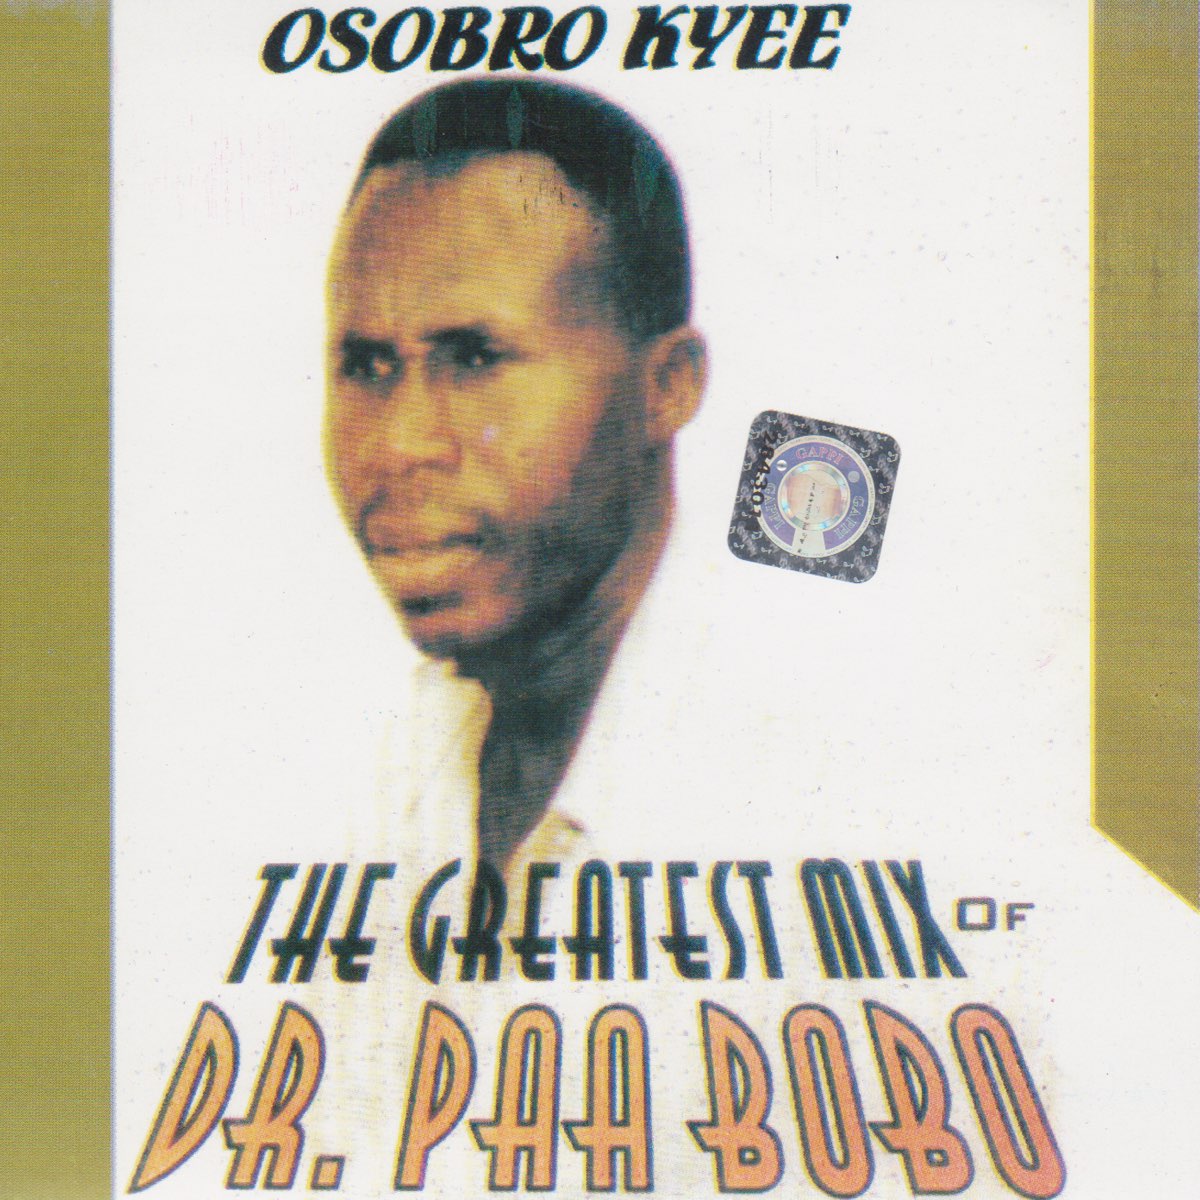 Dr. Paa Bobo - Osobro Kyee